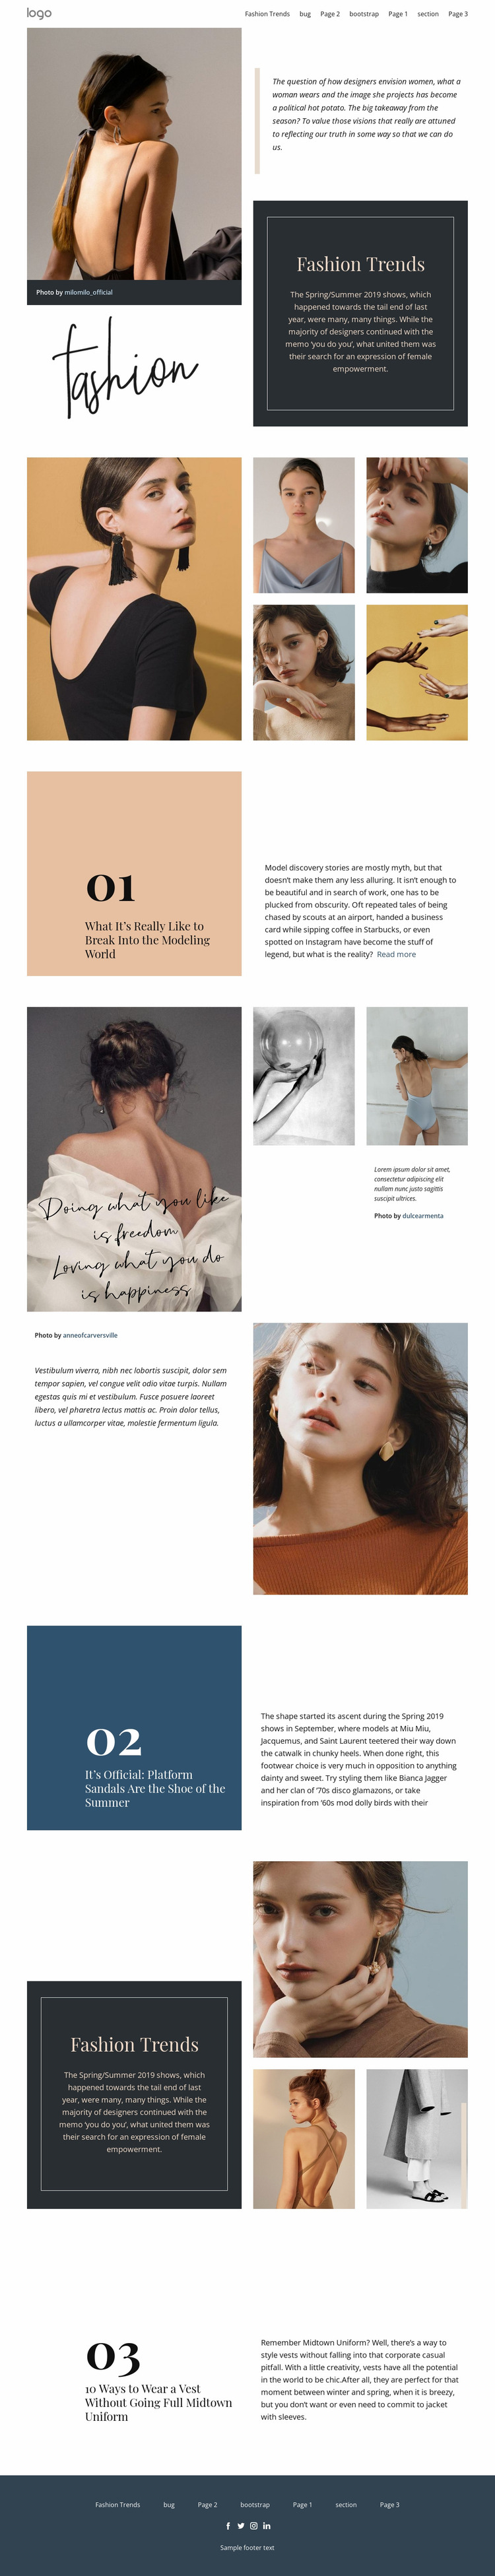 Designer vision of fashion Website Mockup